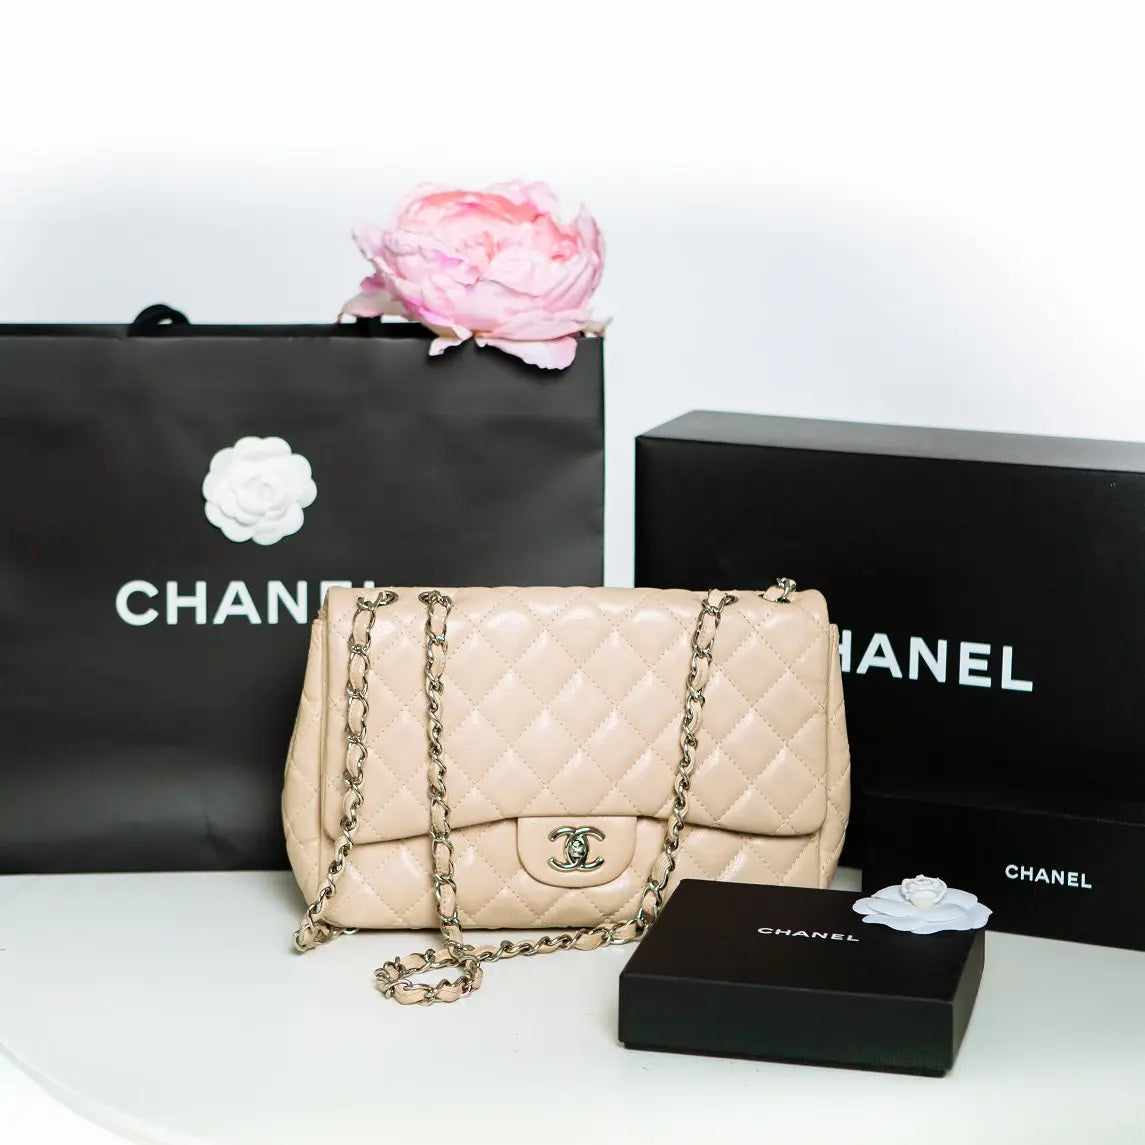 Chanel Classic Handbags Worldwide Price Increase 2019 (US, UK and